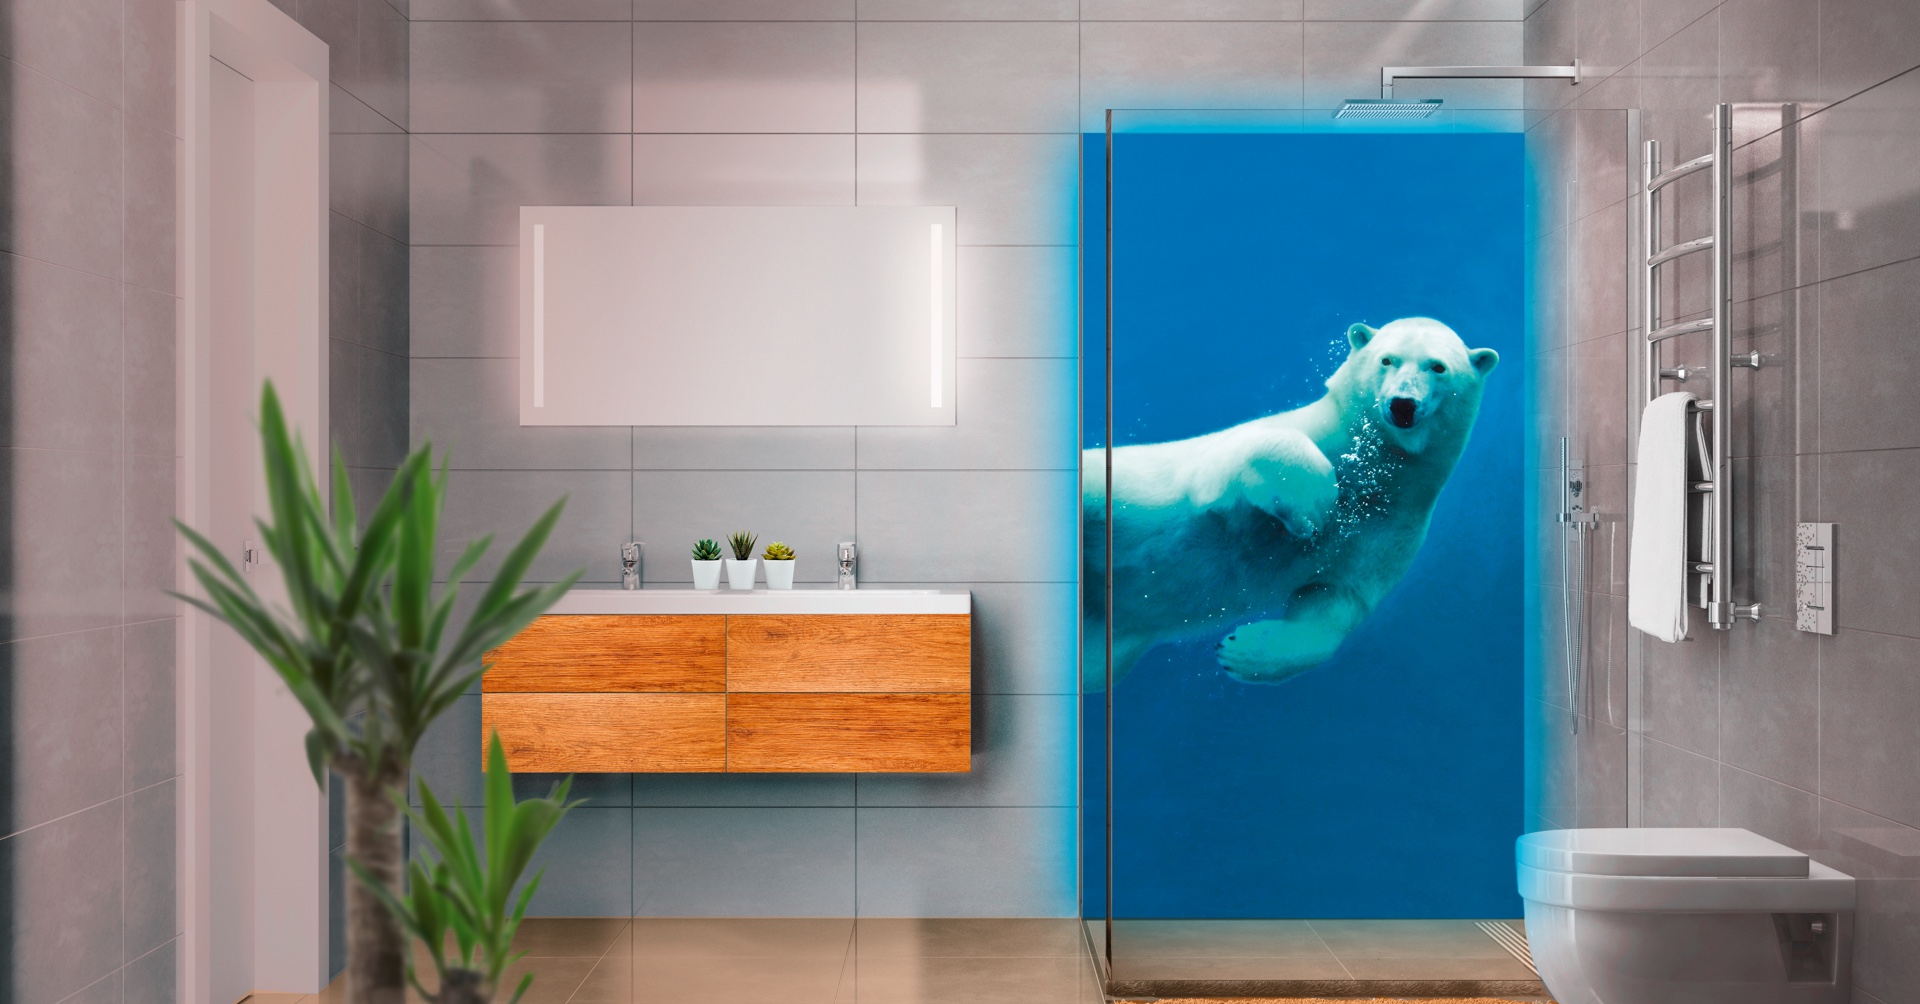 modernes Bad mit beleuchteter Duschrückwand (individuell gewähltes Eisbär-Bild), gläserner Duschwand, LED-Spiegel, Waschtisch, Handtuch-Heizung und Toilette